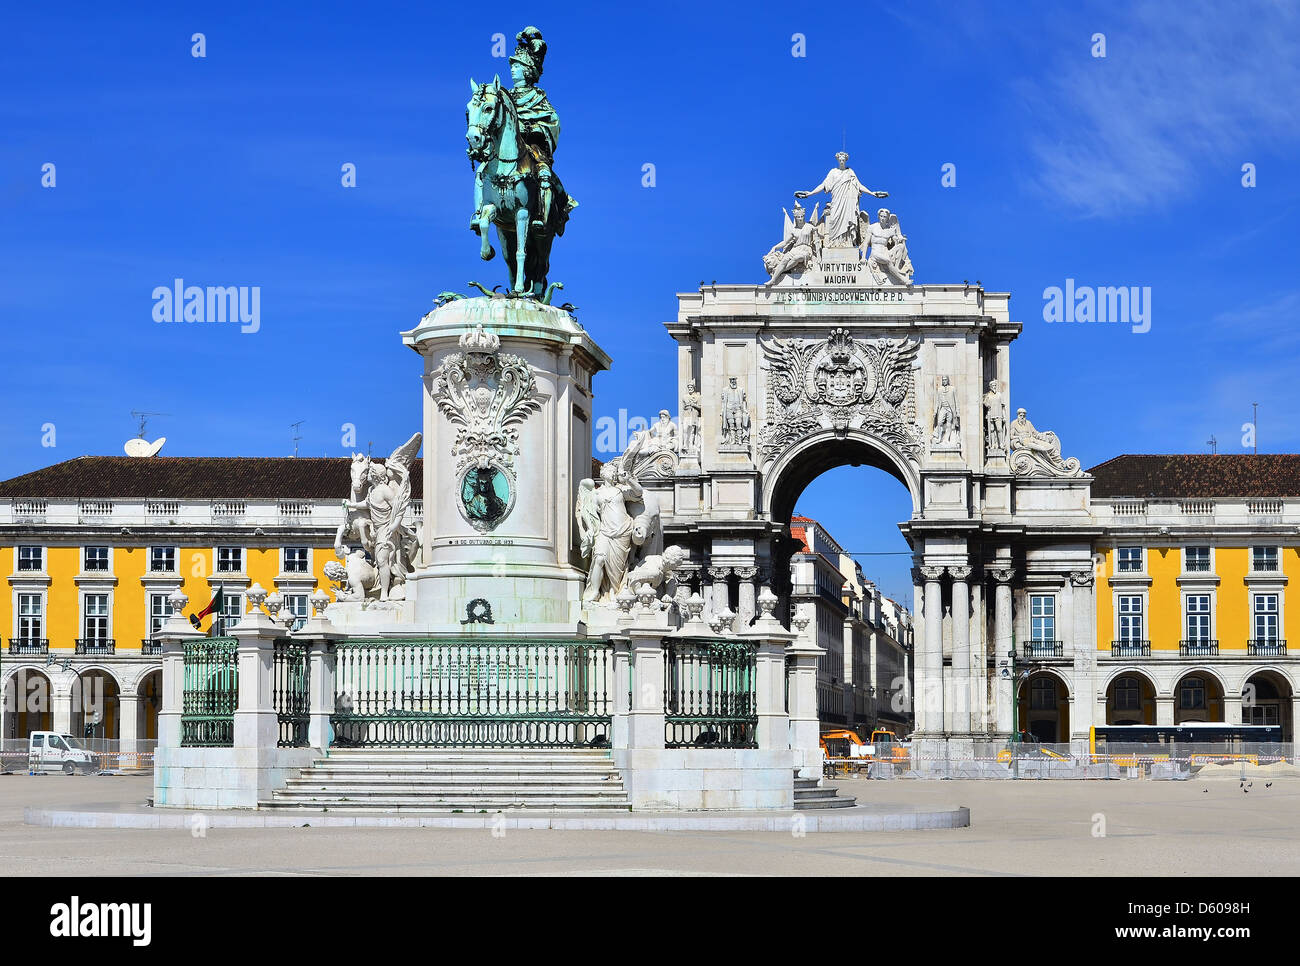 Praca do Comercio (Piazza del commercio) è situata vicino al fiume Tago a Lisbona, Portogallo. Al centro si trova la statua di Re Jose I. Foto Stock